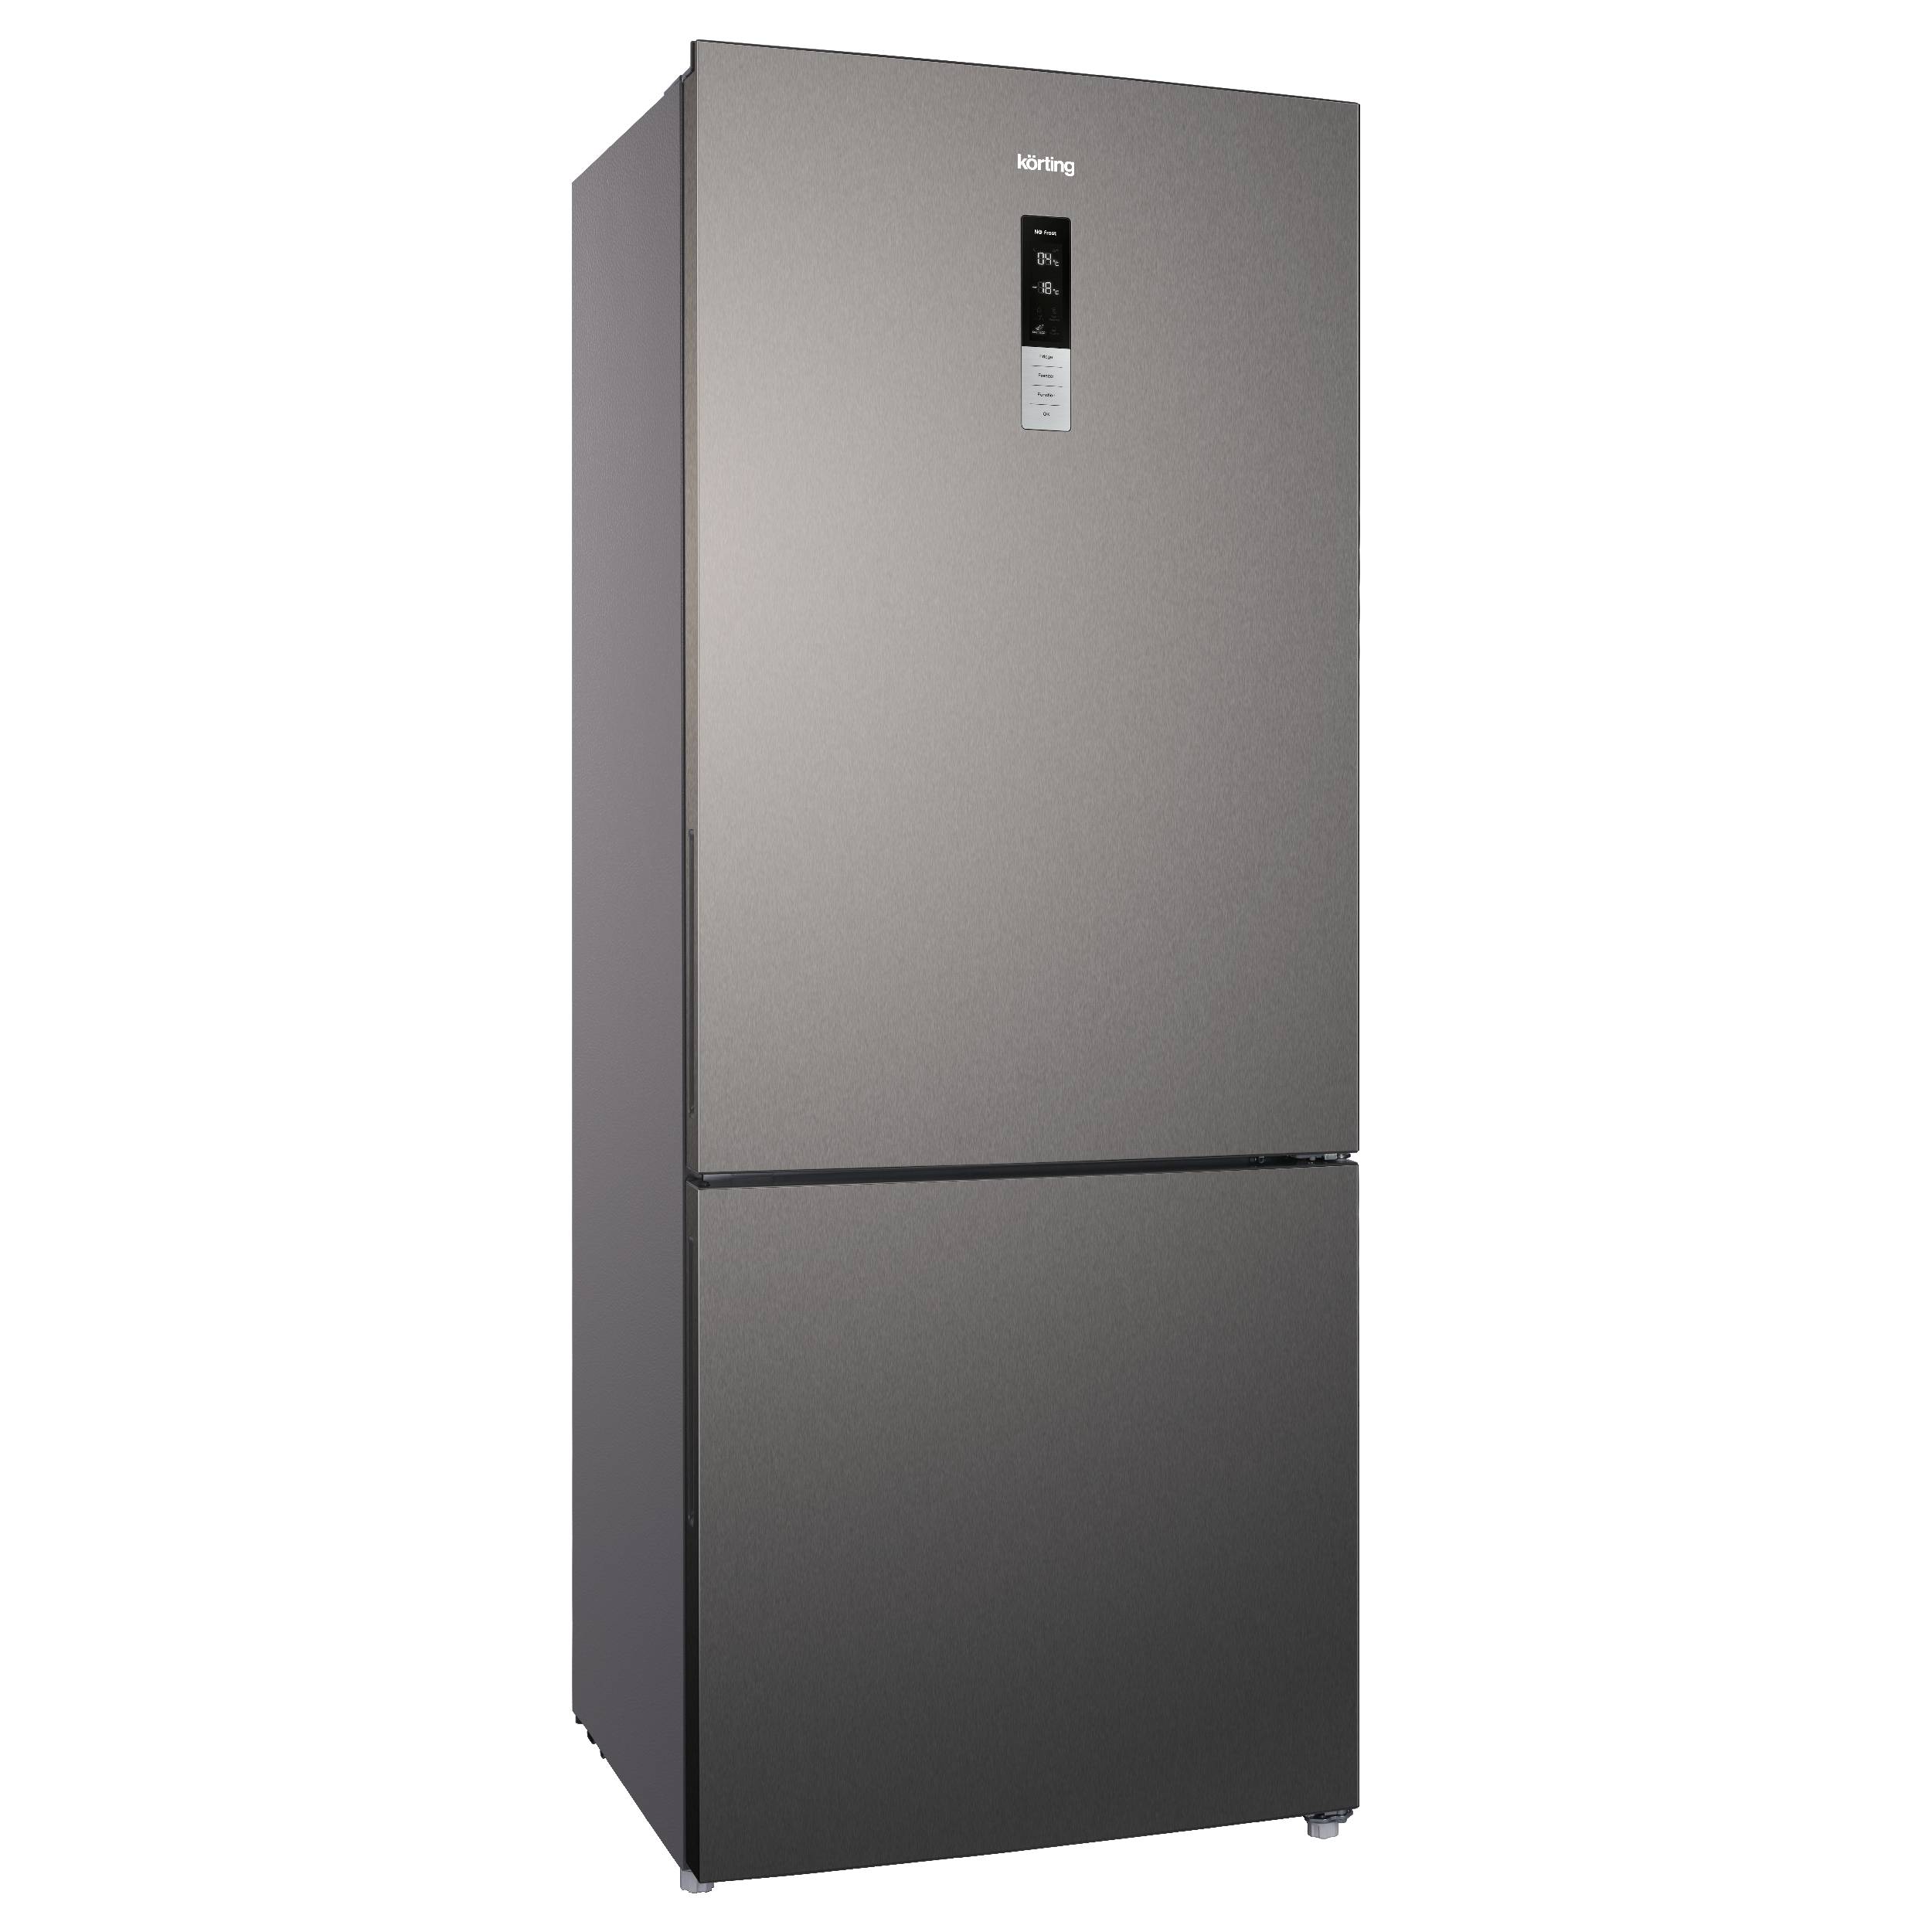 Холодильник Korting KNFC 72337 X серебристый, серый шоковая заморозка при v камеры до 4 м